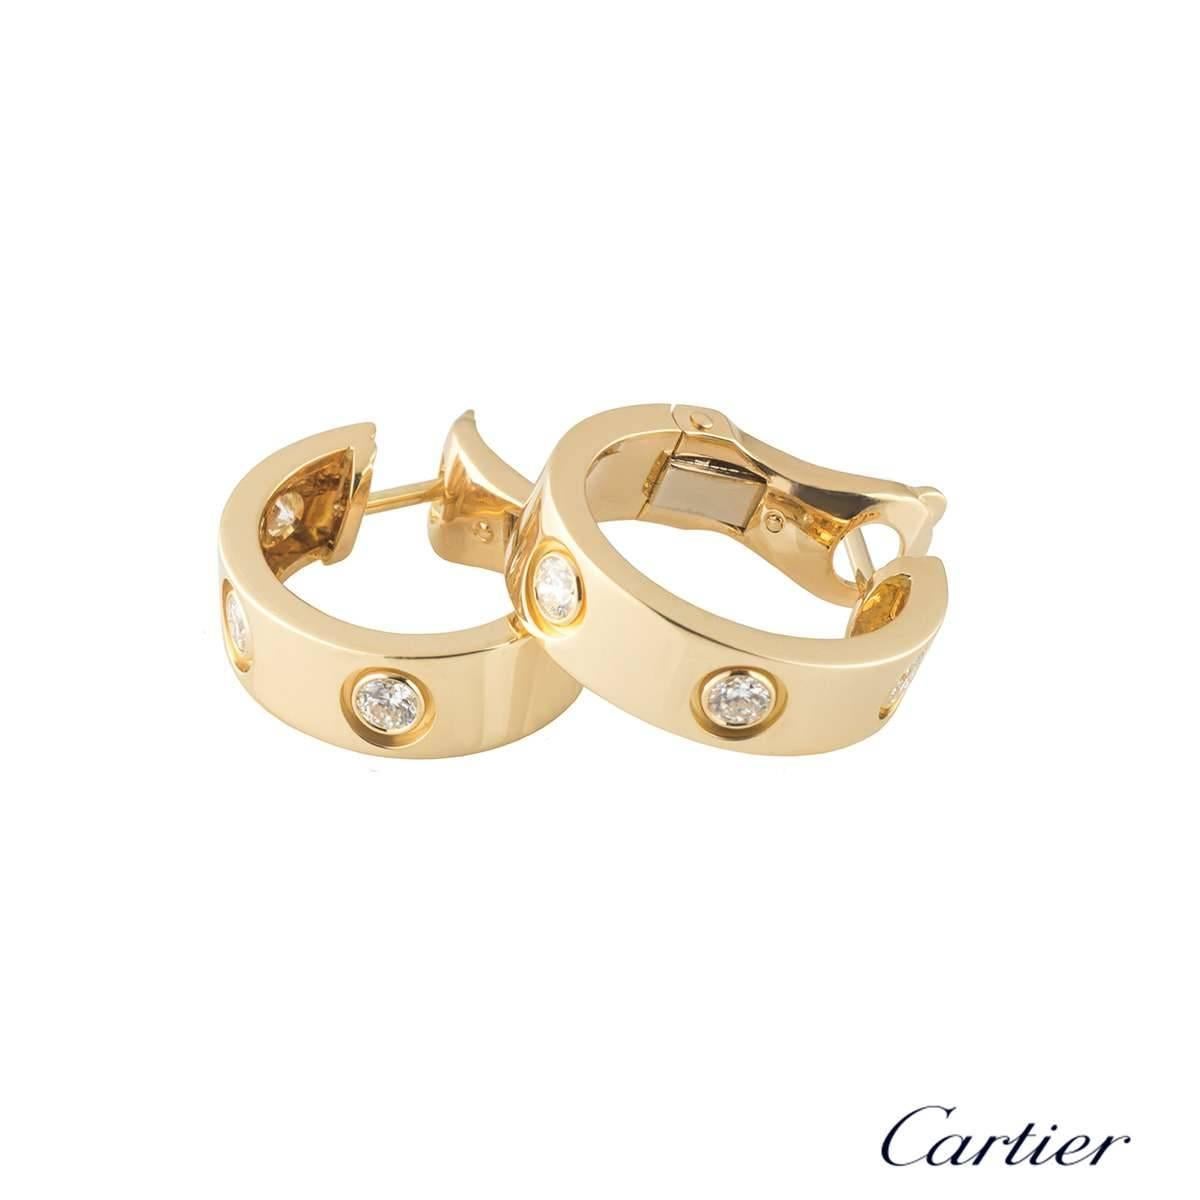 Une paire de boucles d'oreilles en or jaune 18 carats avec des diamants de la collection iconique Love de Cartier. Chaque boucle d'oreille est sertie de 3 diamants ronds de taille brillante. Les boucles d'oreilles mesurent 18 mm de long et 5 mm de